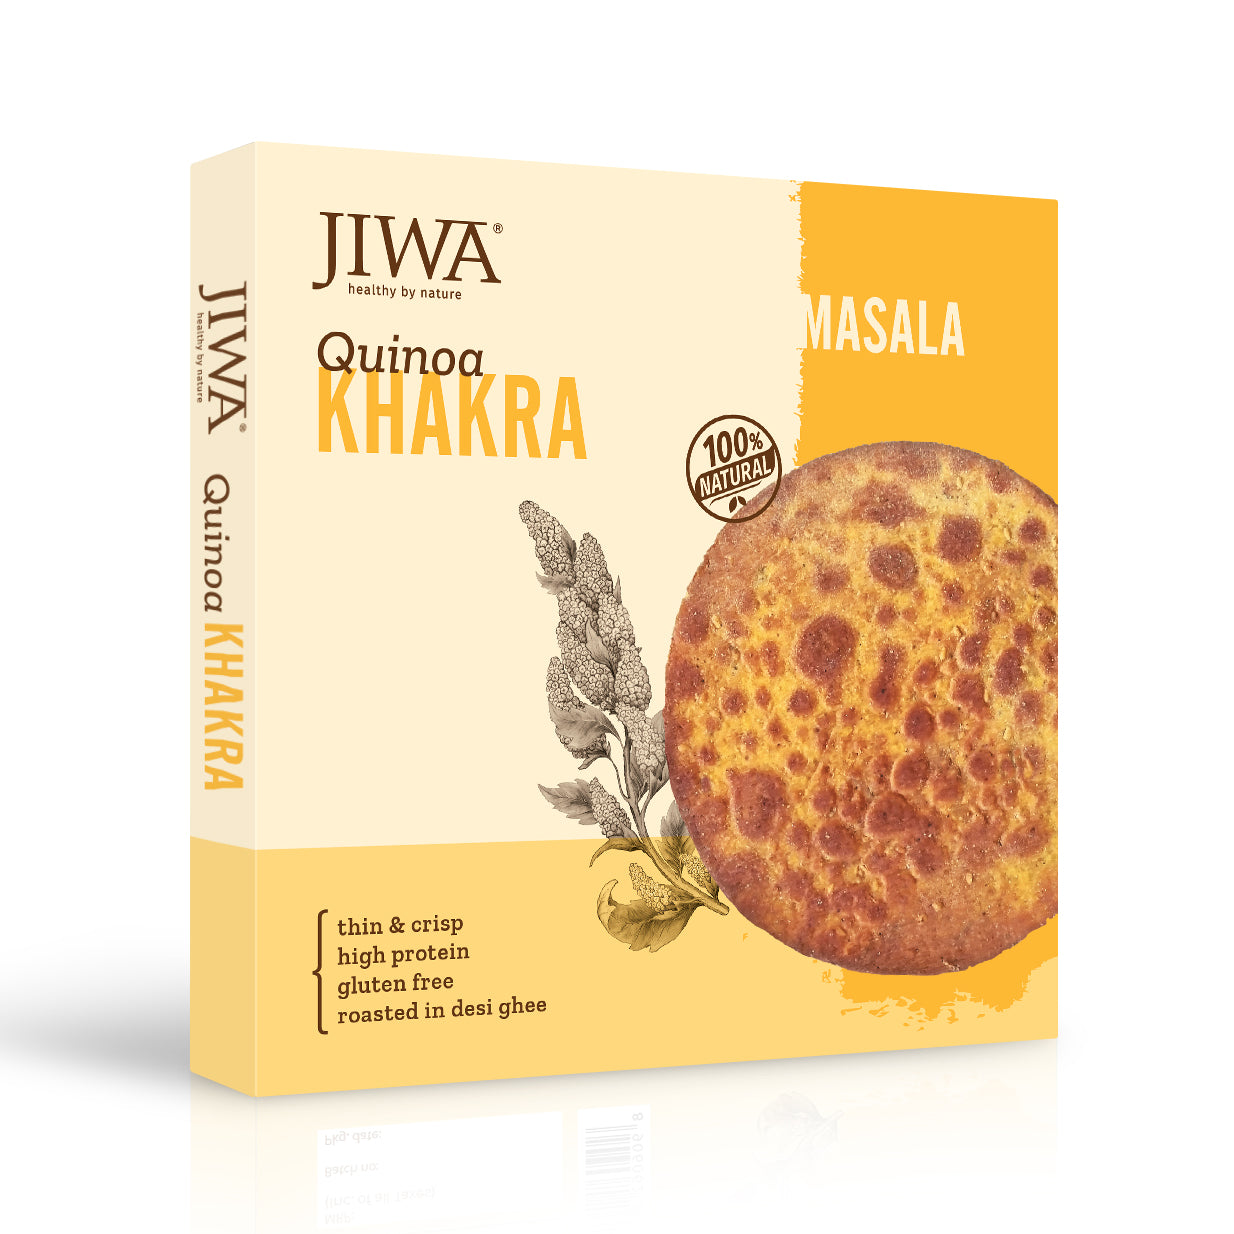 buy quinoa khakra online-jiwa organic quinoa